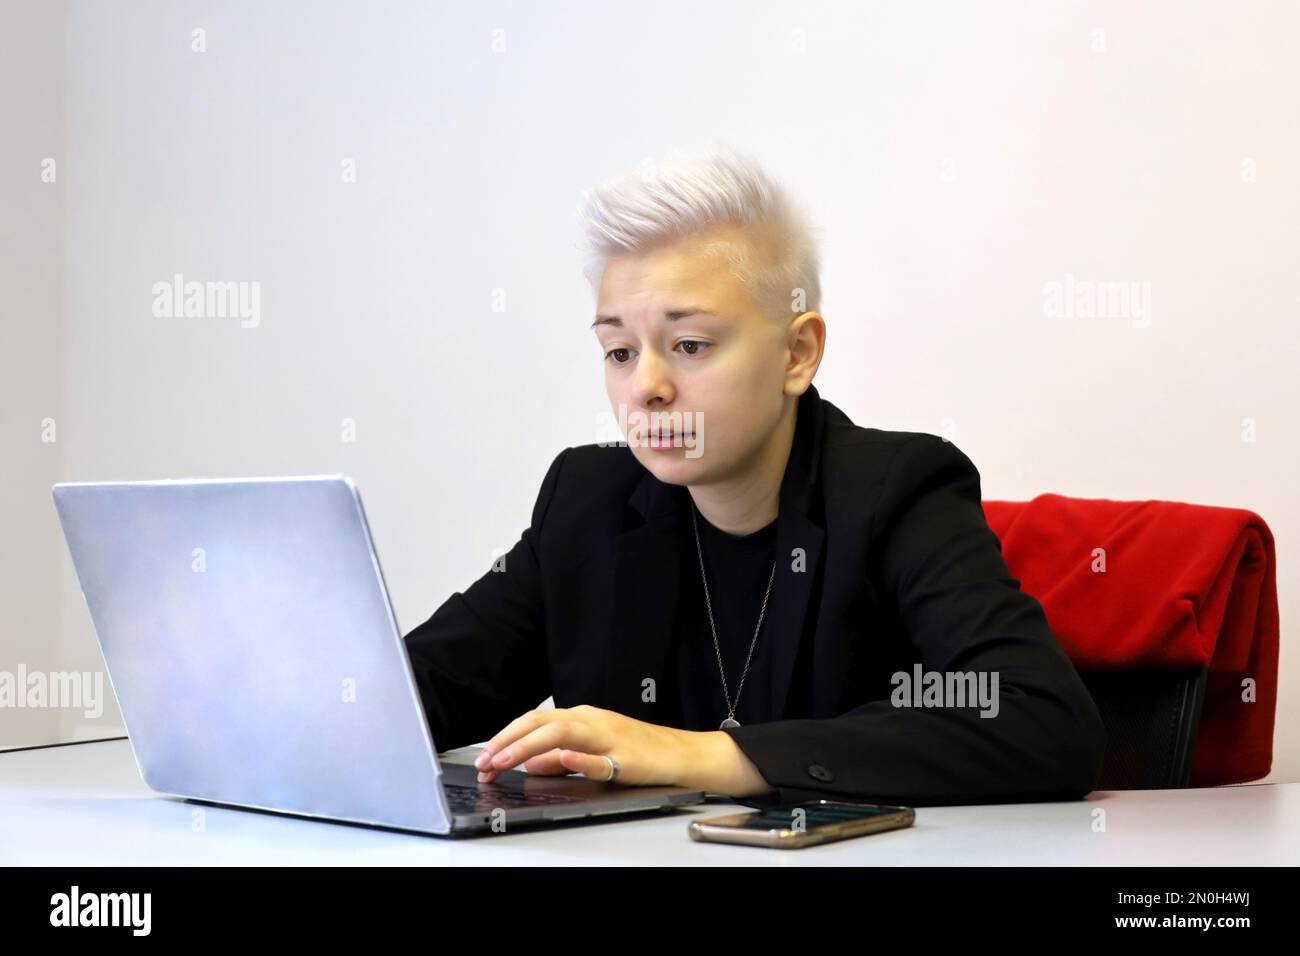 Mädchen mit kurzen blonden Haaren, die am Laptop sitzen, mit besorgtem Gesichtsausdruck am Schreibtisch. Tomboy Lifestyle, Konzept der schwierigen Aufgabe Stockfoto